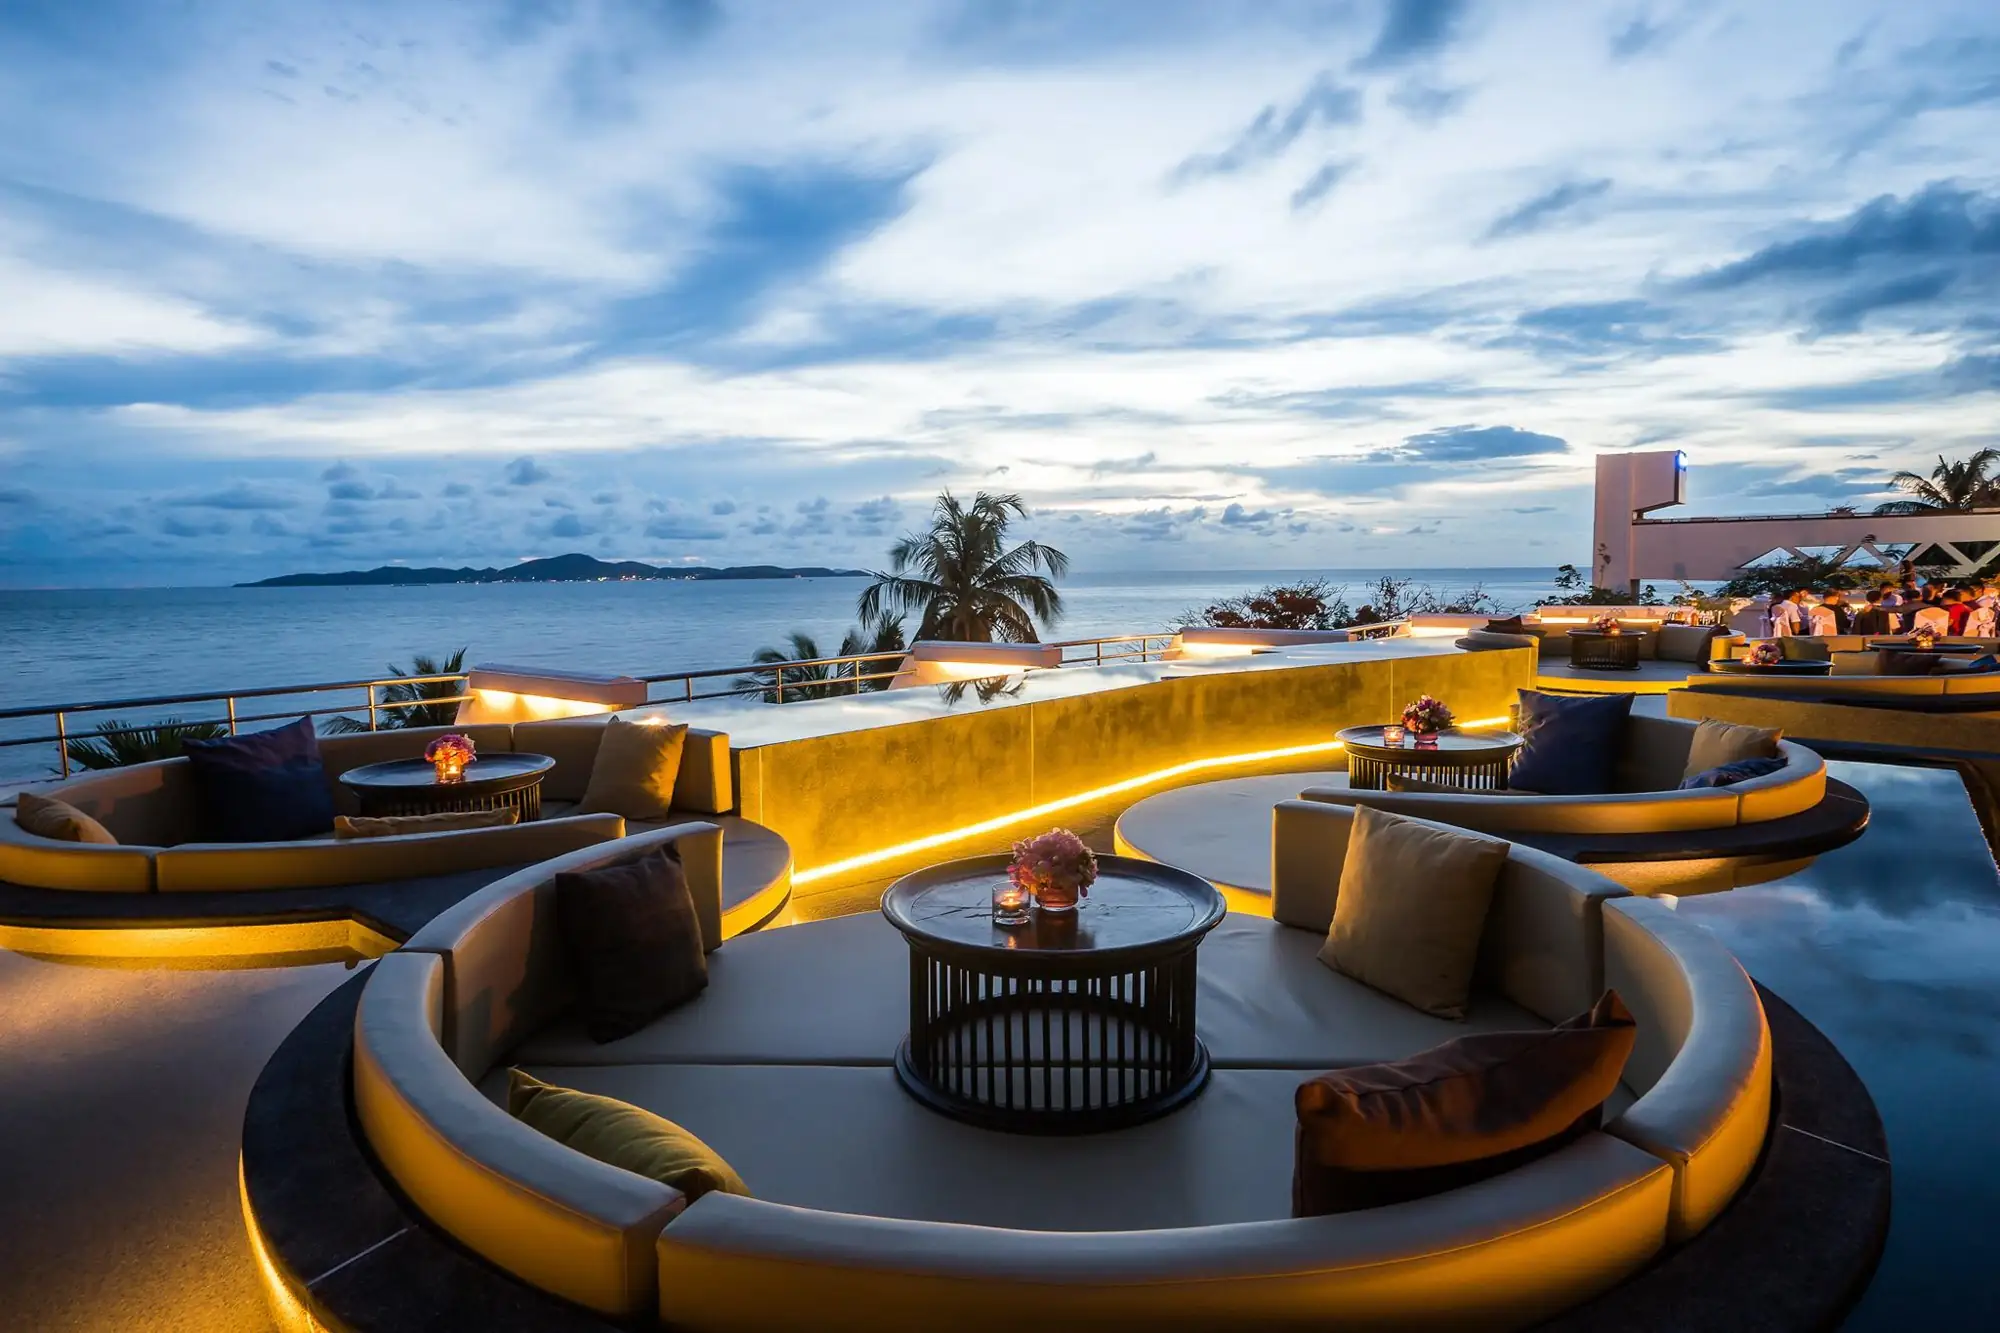 皇家克里夫酒店集團 Royal Cliff hotels Group 芭堤雅 Pattaya